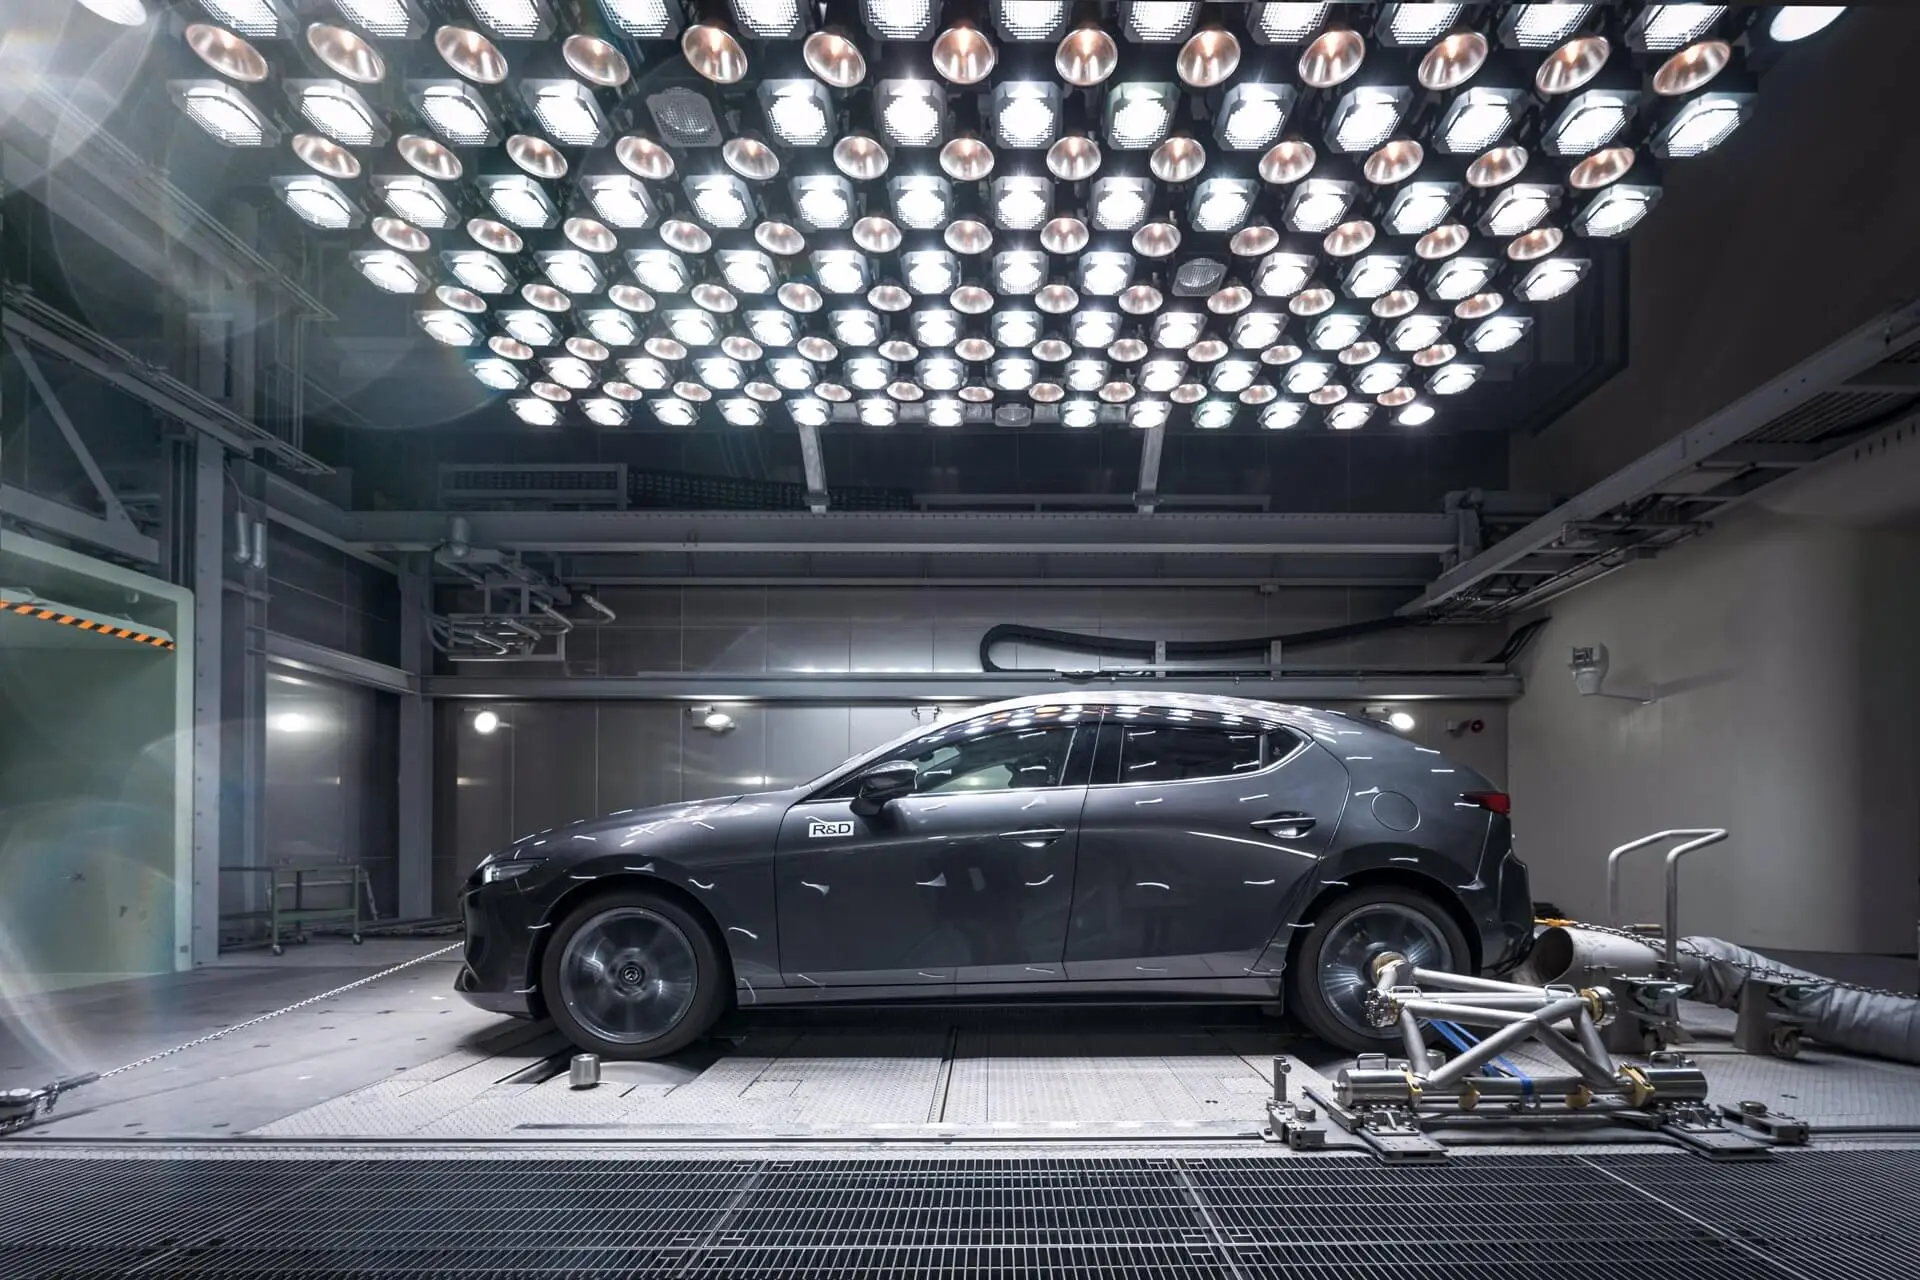 Wymiary samochodów Mazda - dane techniczne aktualnych modeli